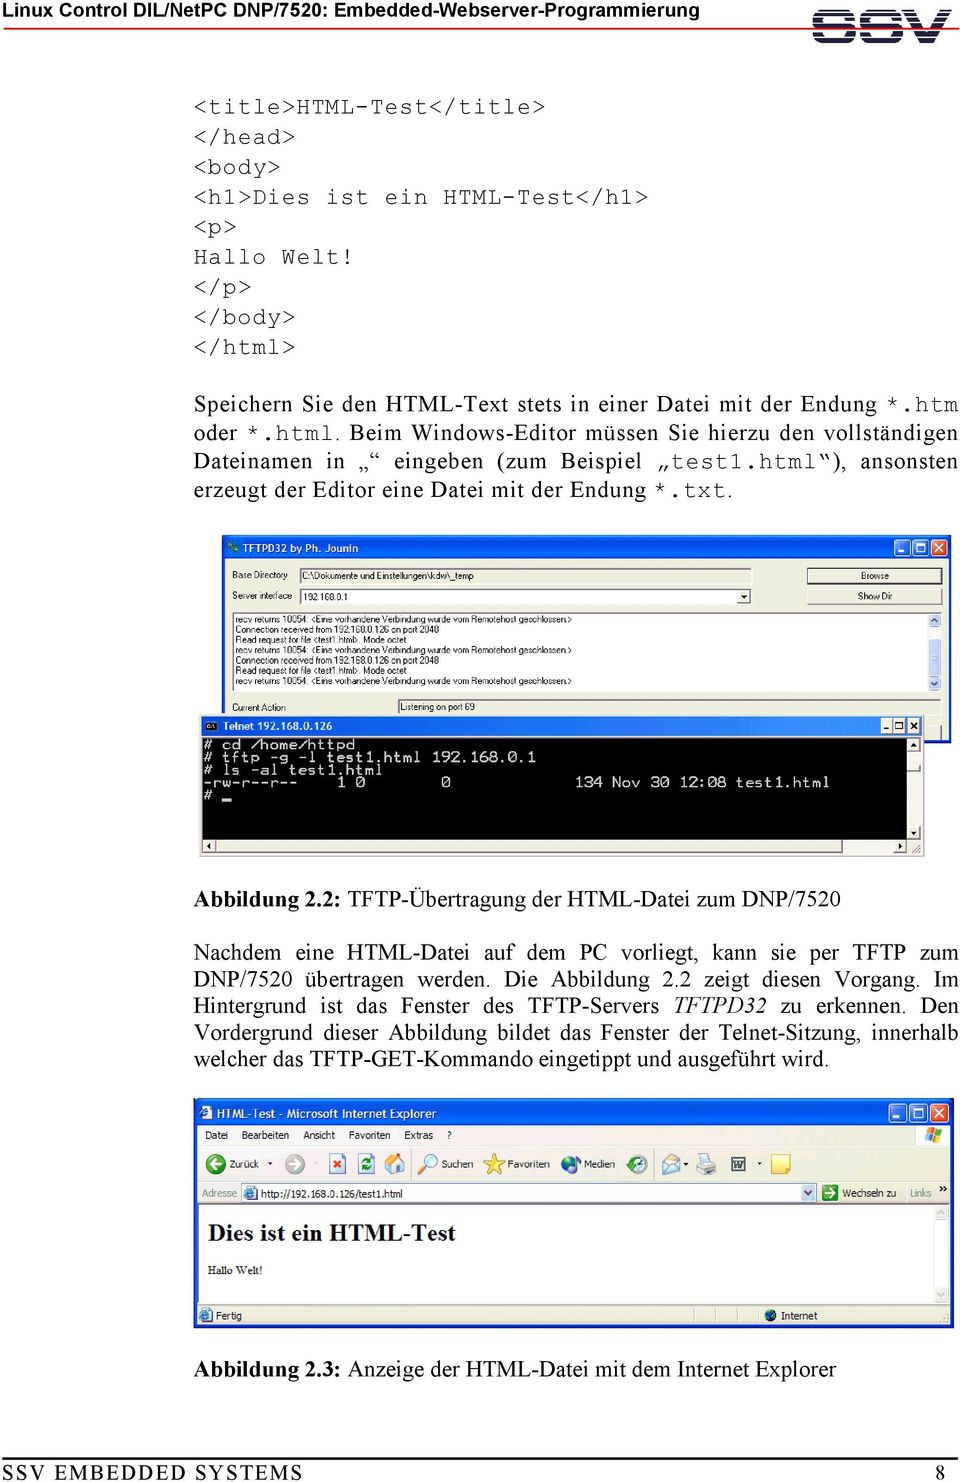 2: TFTP-Übertragung der HTML-Datei zum DNP/7520 Nachdem eine HTML-Datei auf dem PC vorliegt, kann sie per TFTP zum DNP/7520 übertragen werden. Die Abbildung 2.2 zeigt diesen Vorgang.